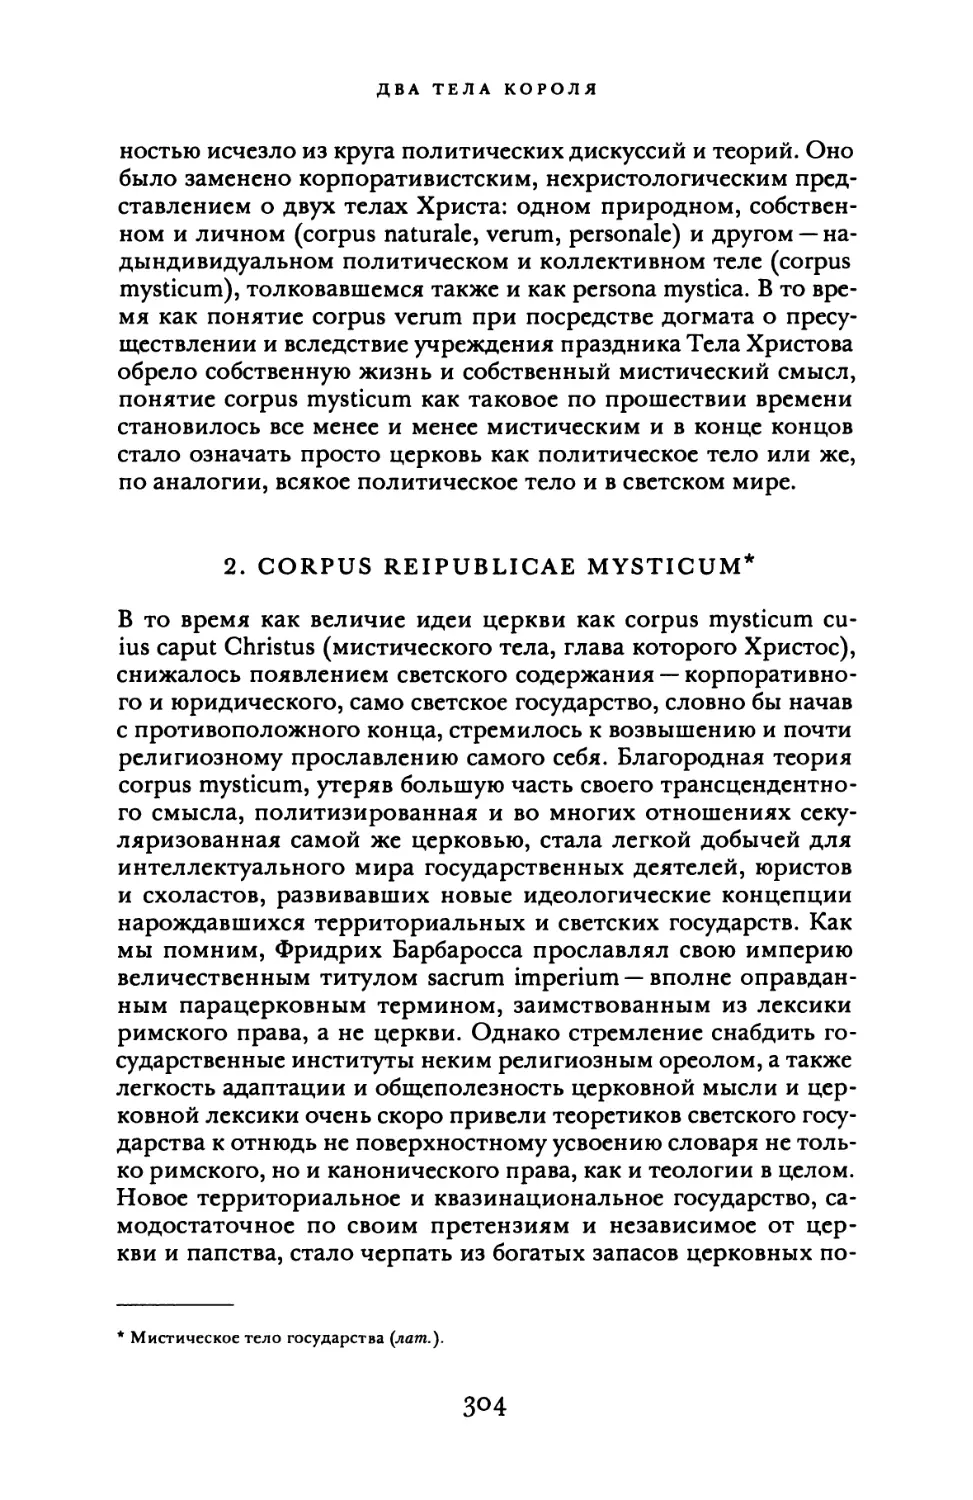 2. Corpus Reipublicae mysticum